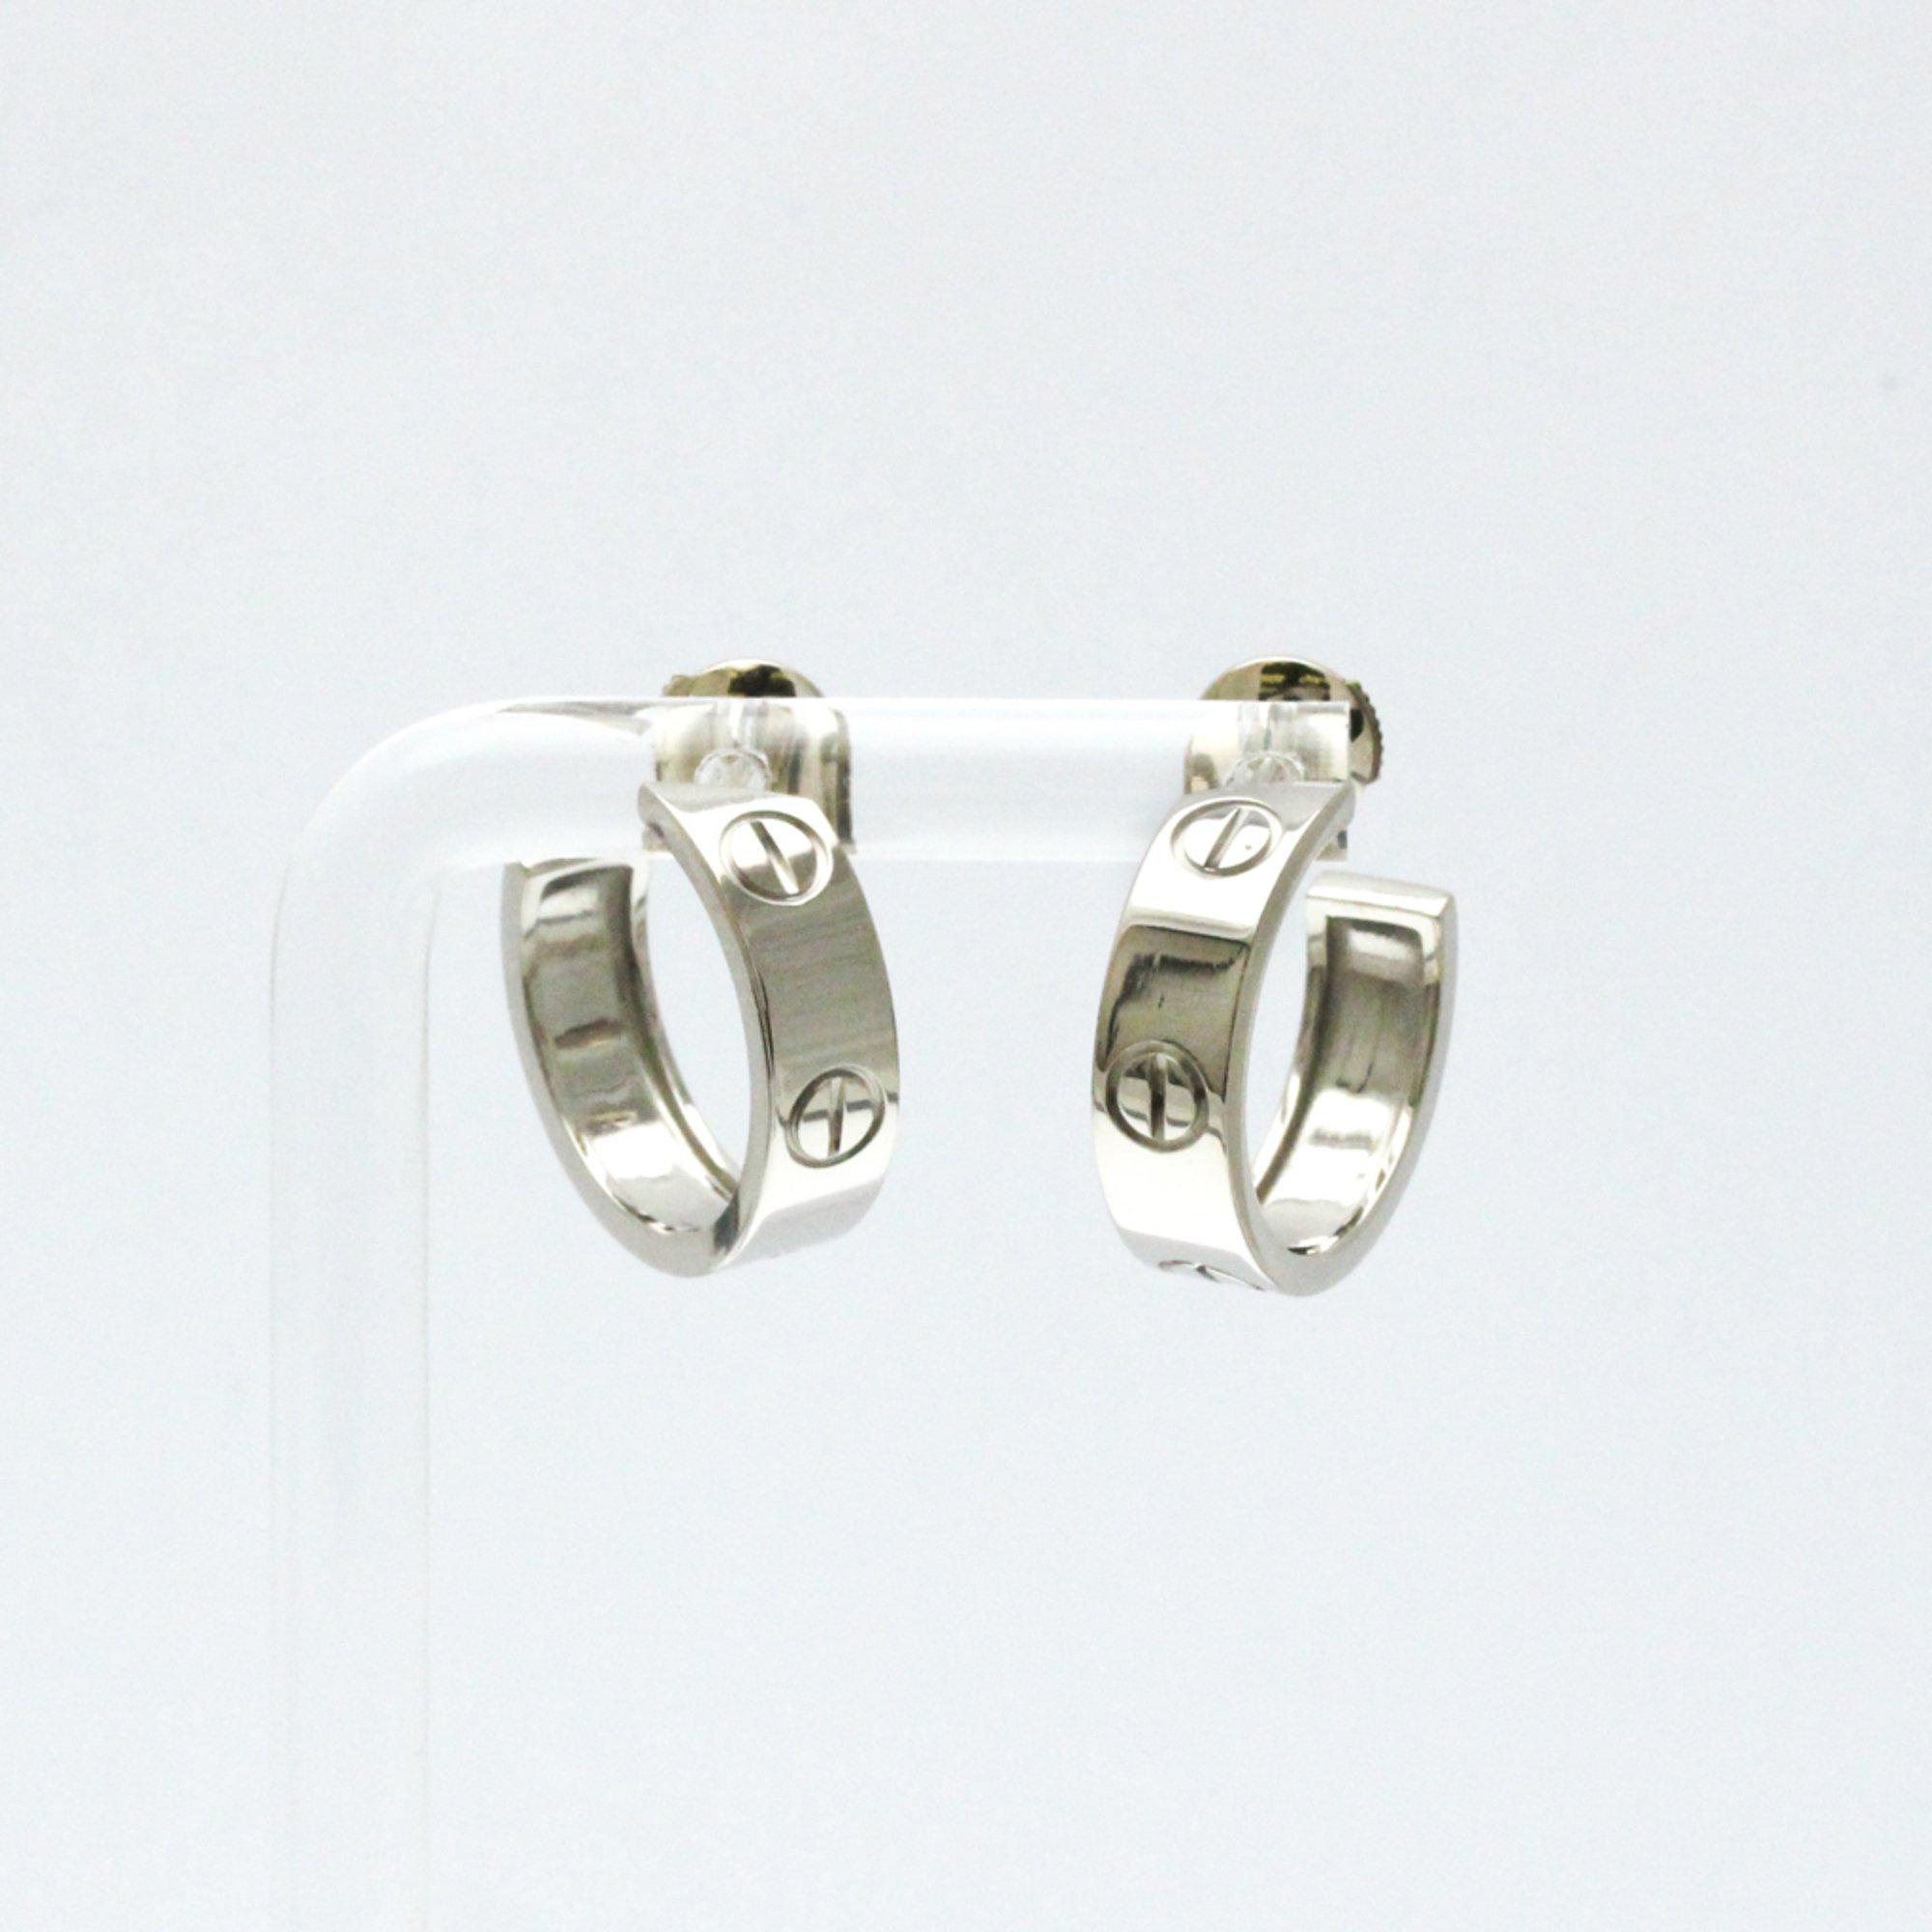 Cartier LOVE Earrings No Stone White Gold (18K) Half Hoop Earrings Silver